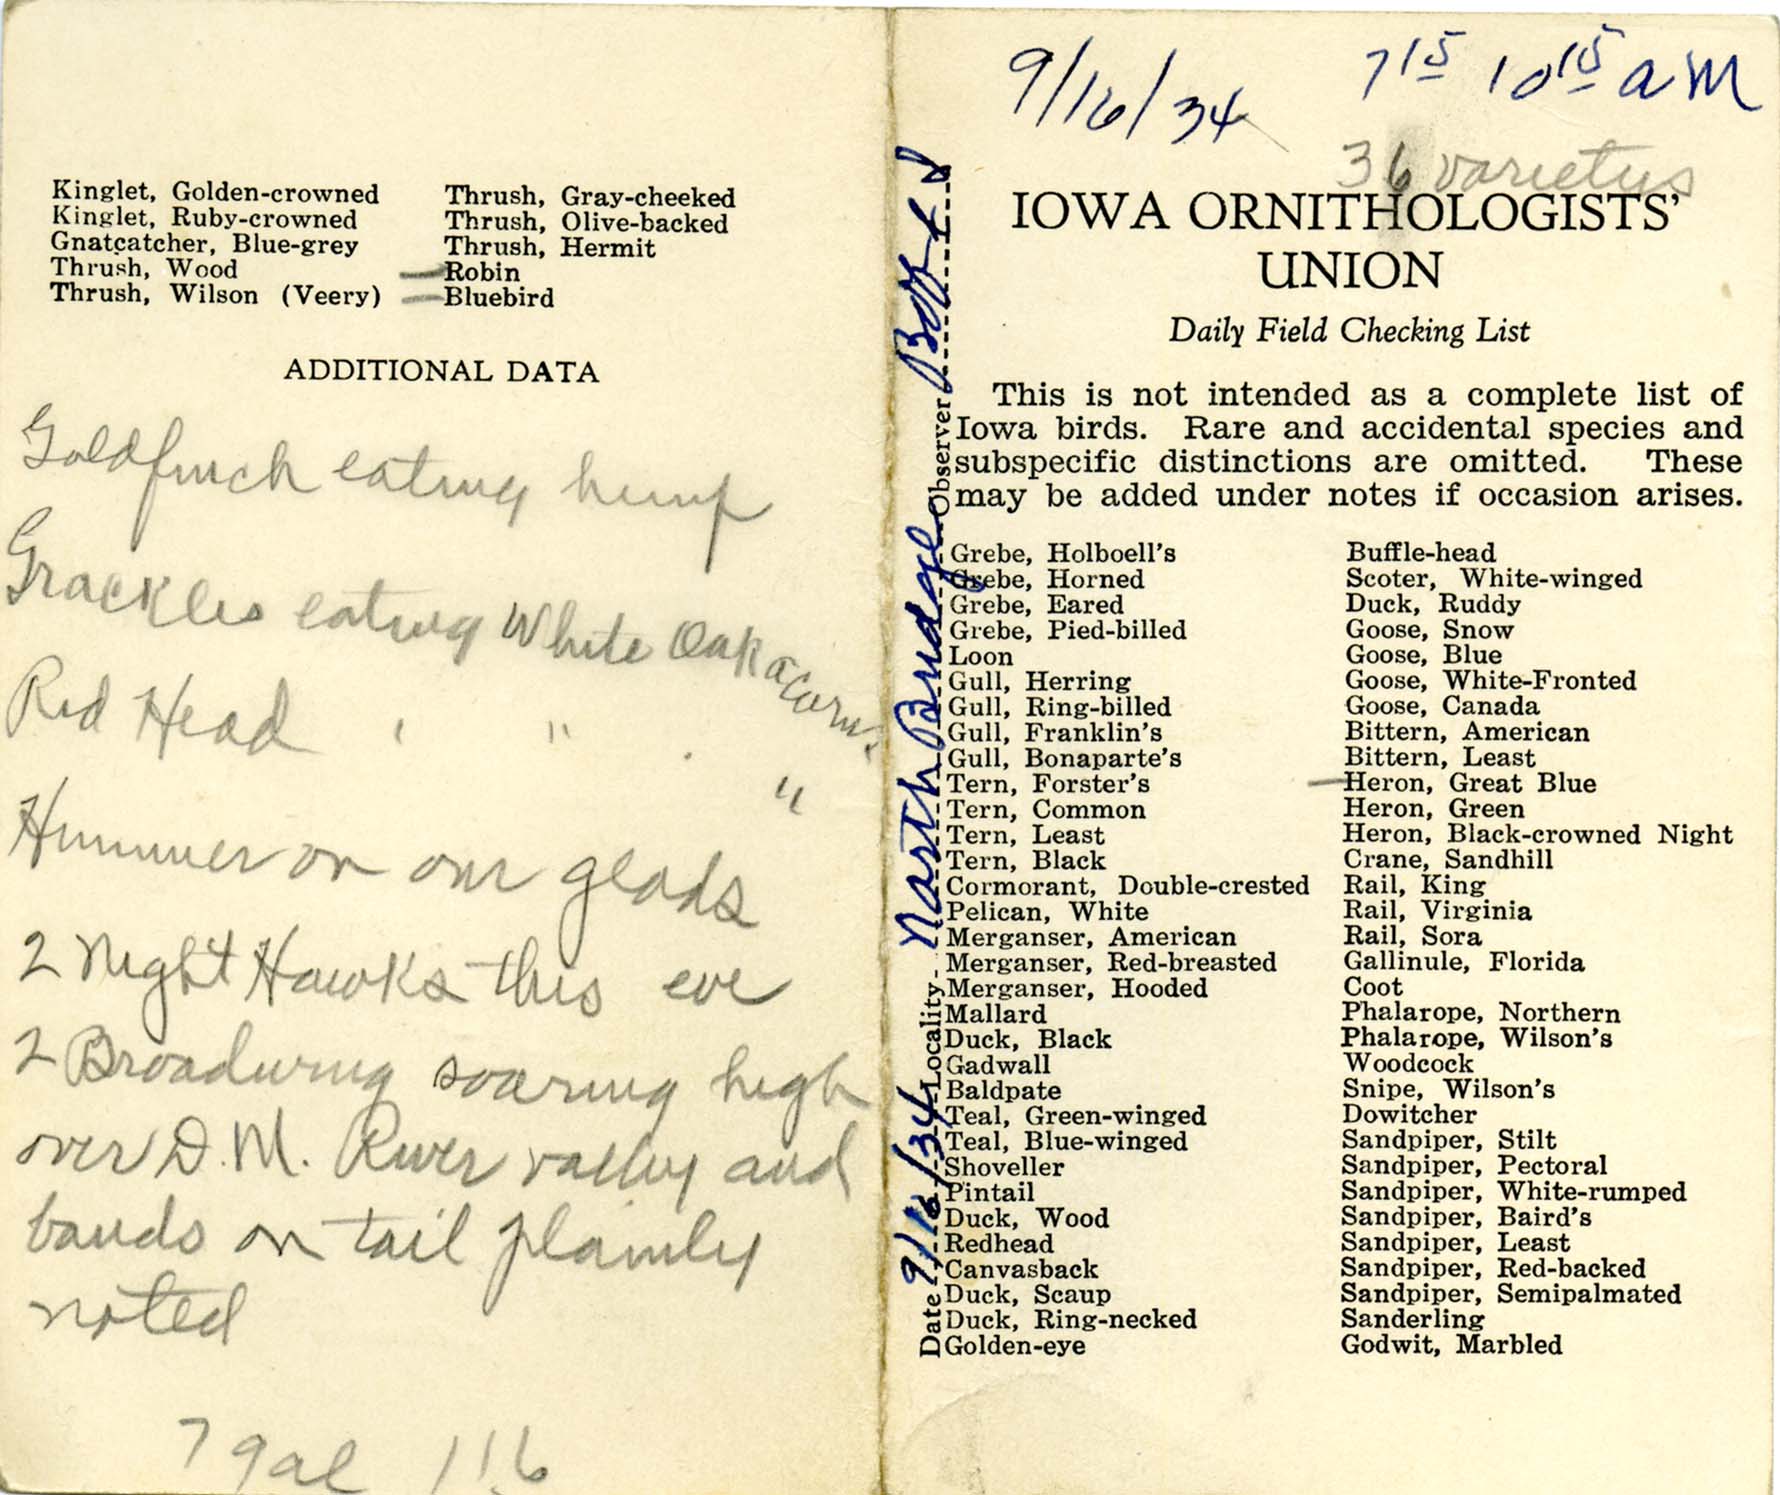 Daily field checking list, Walter Rosene, September 16, 1934